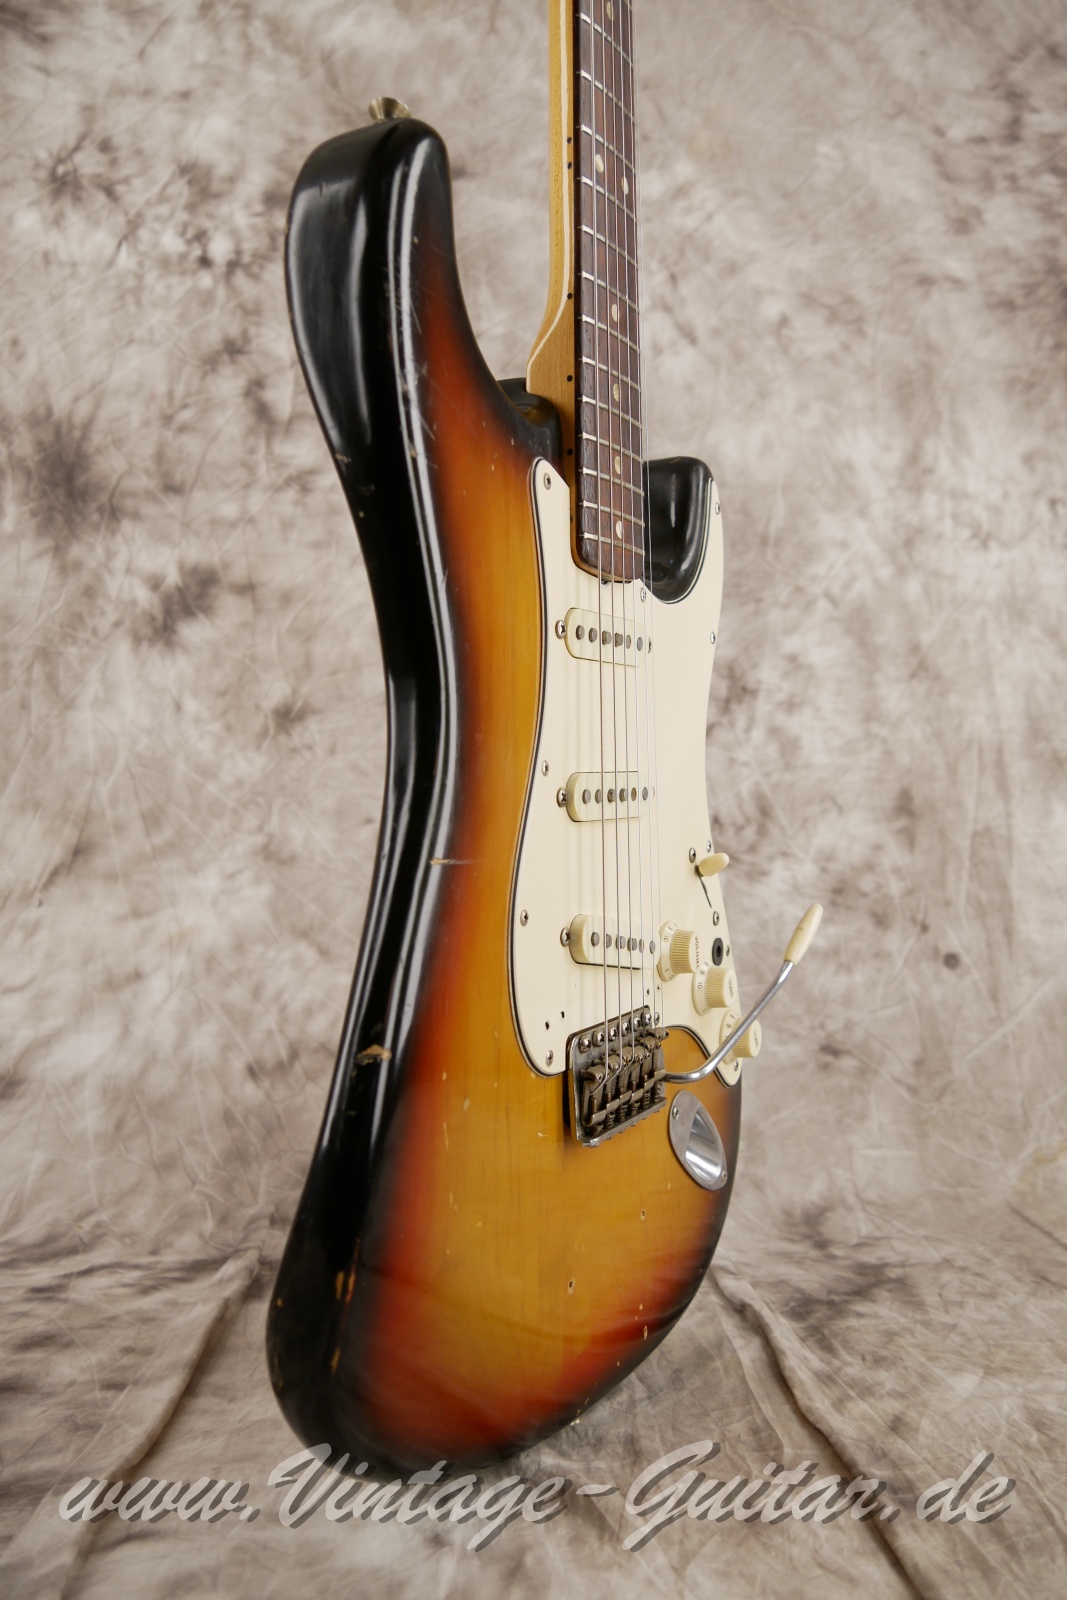 Fender_Stratocaster_sunburst_4hole_1971-009.JPG